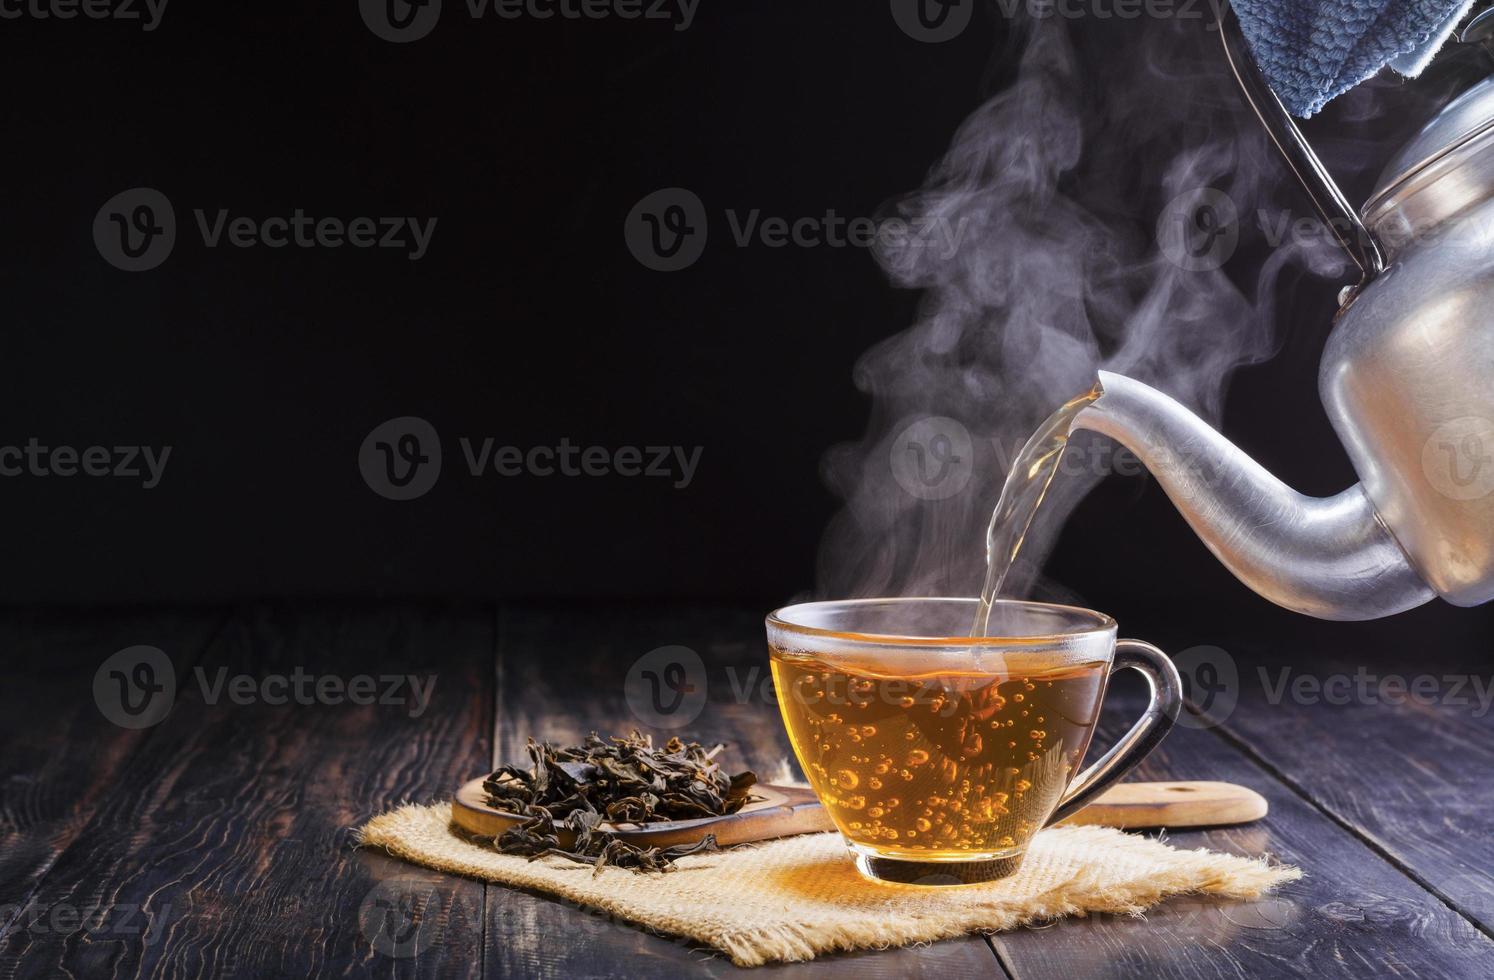 versez une théière chaude aux herbes dans une tasse en verre, une tasse à thé et des feuilles de thé sèches dans une cuillère en bois et placez-la sur une table en bois noire sur un fond sombre. photo